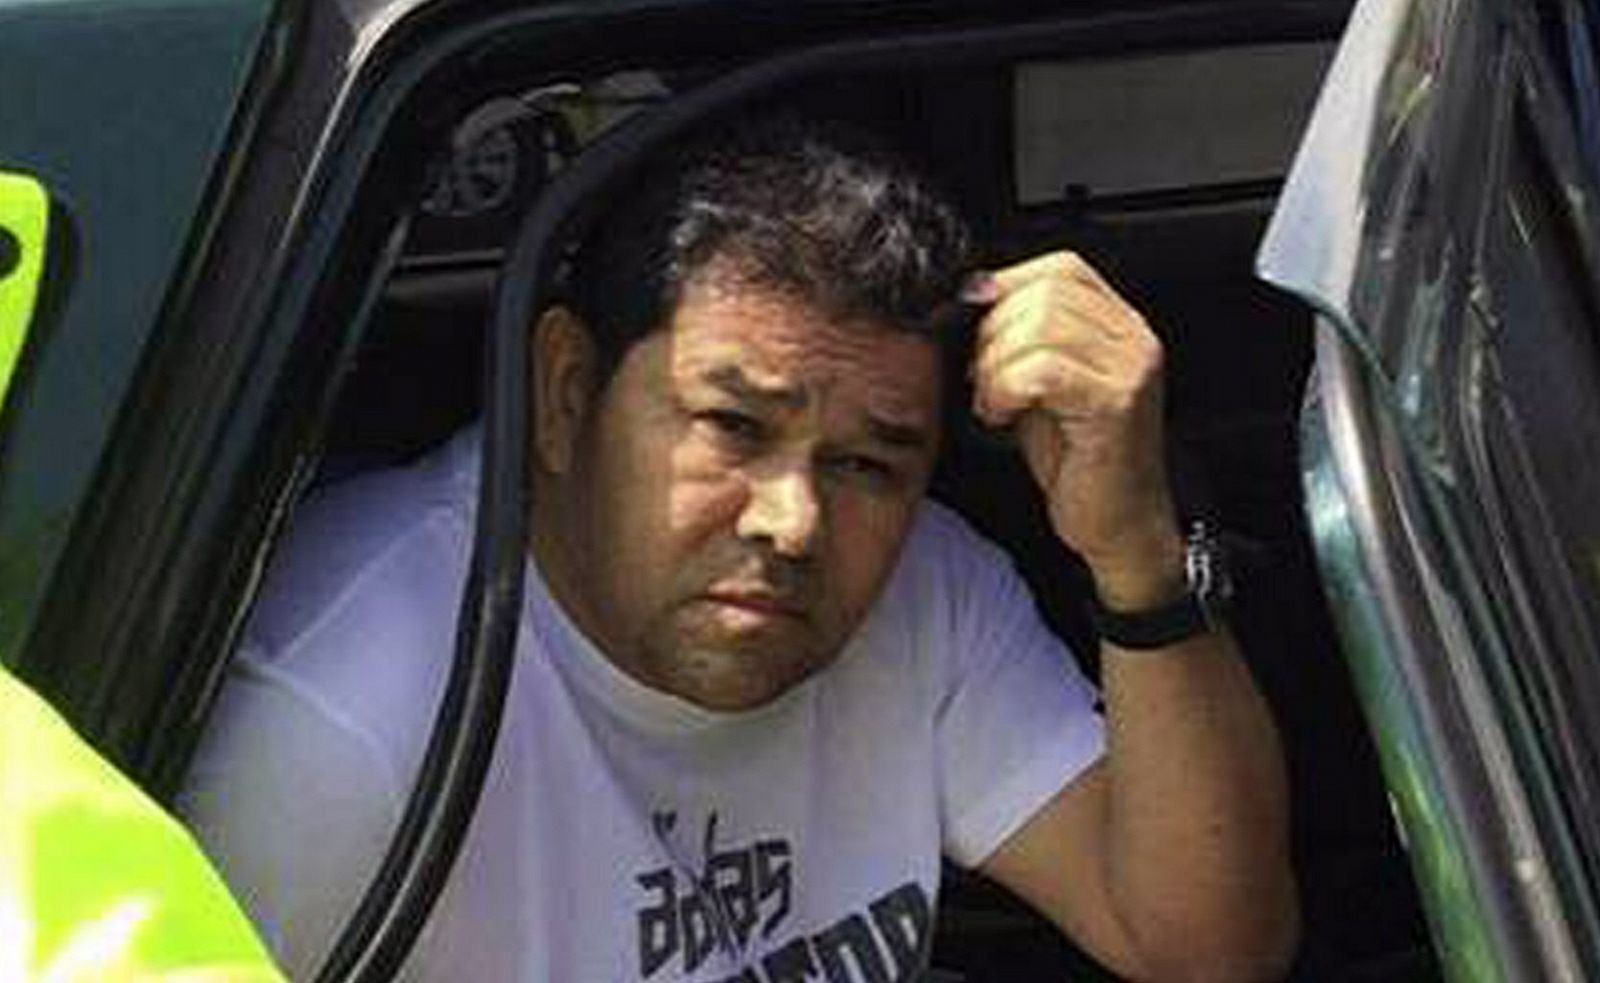 Fotografía cedida por la Policía de Colombia que muestra a José Elber Merchán Cortés, alias 'El Alcalde' detenido por agentes de la entidad en el departamento de La Guajira (Colombia).